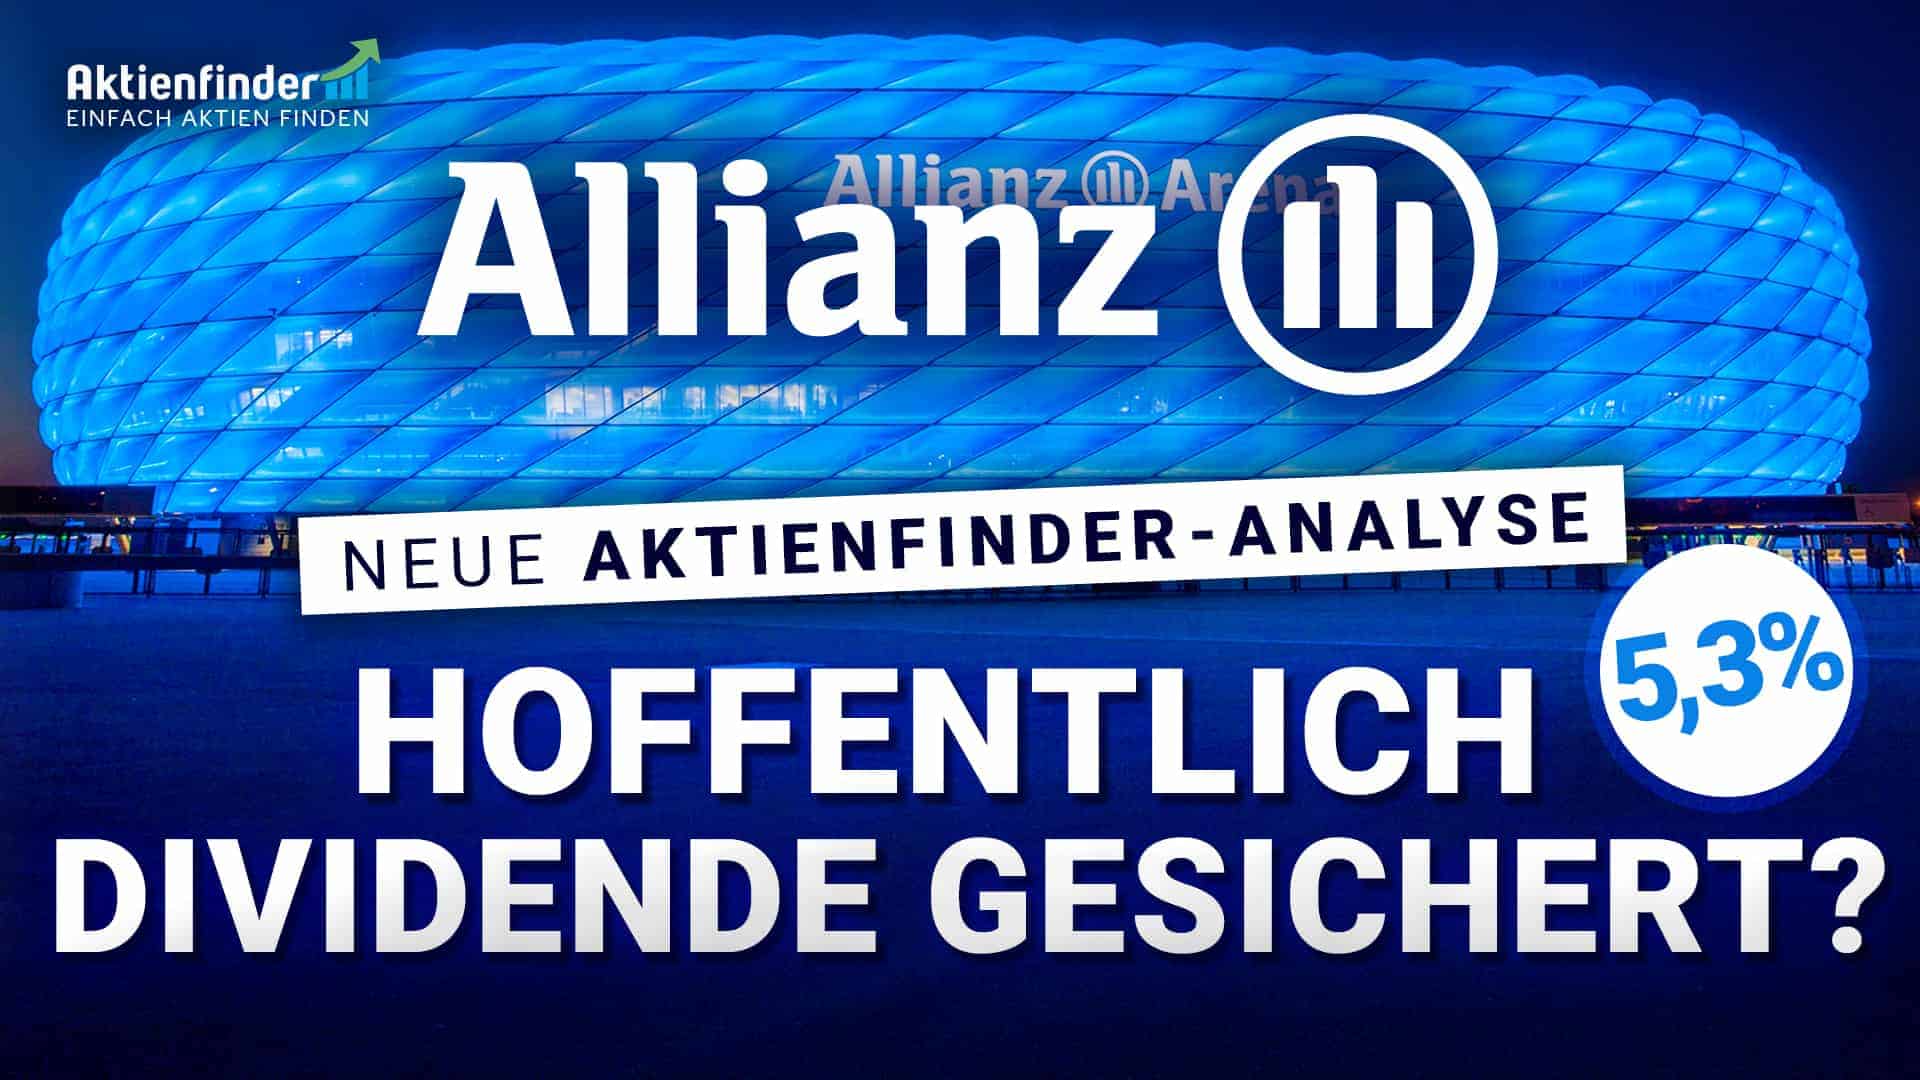 Allianz Aktie - Hoffentlich Dividende gesichert